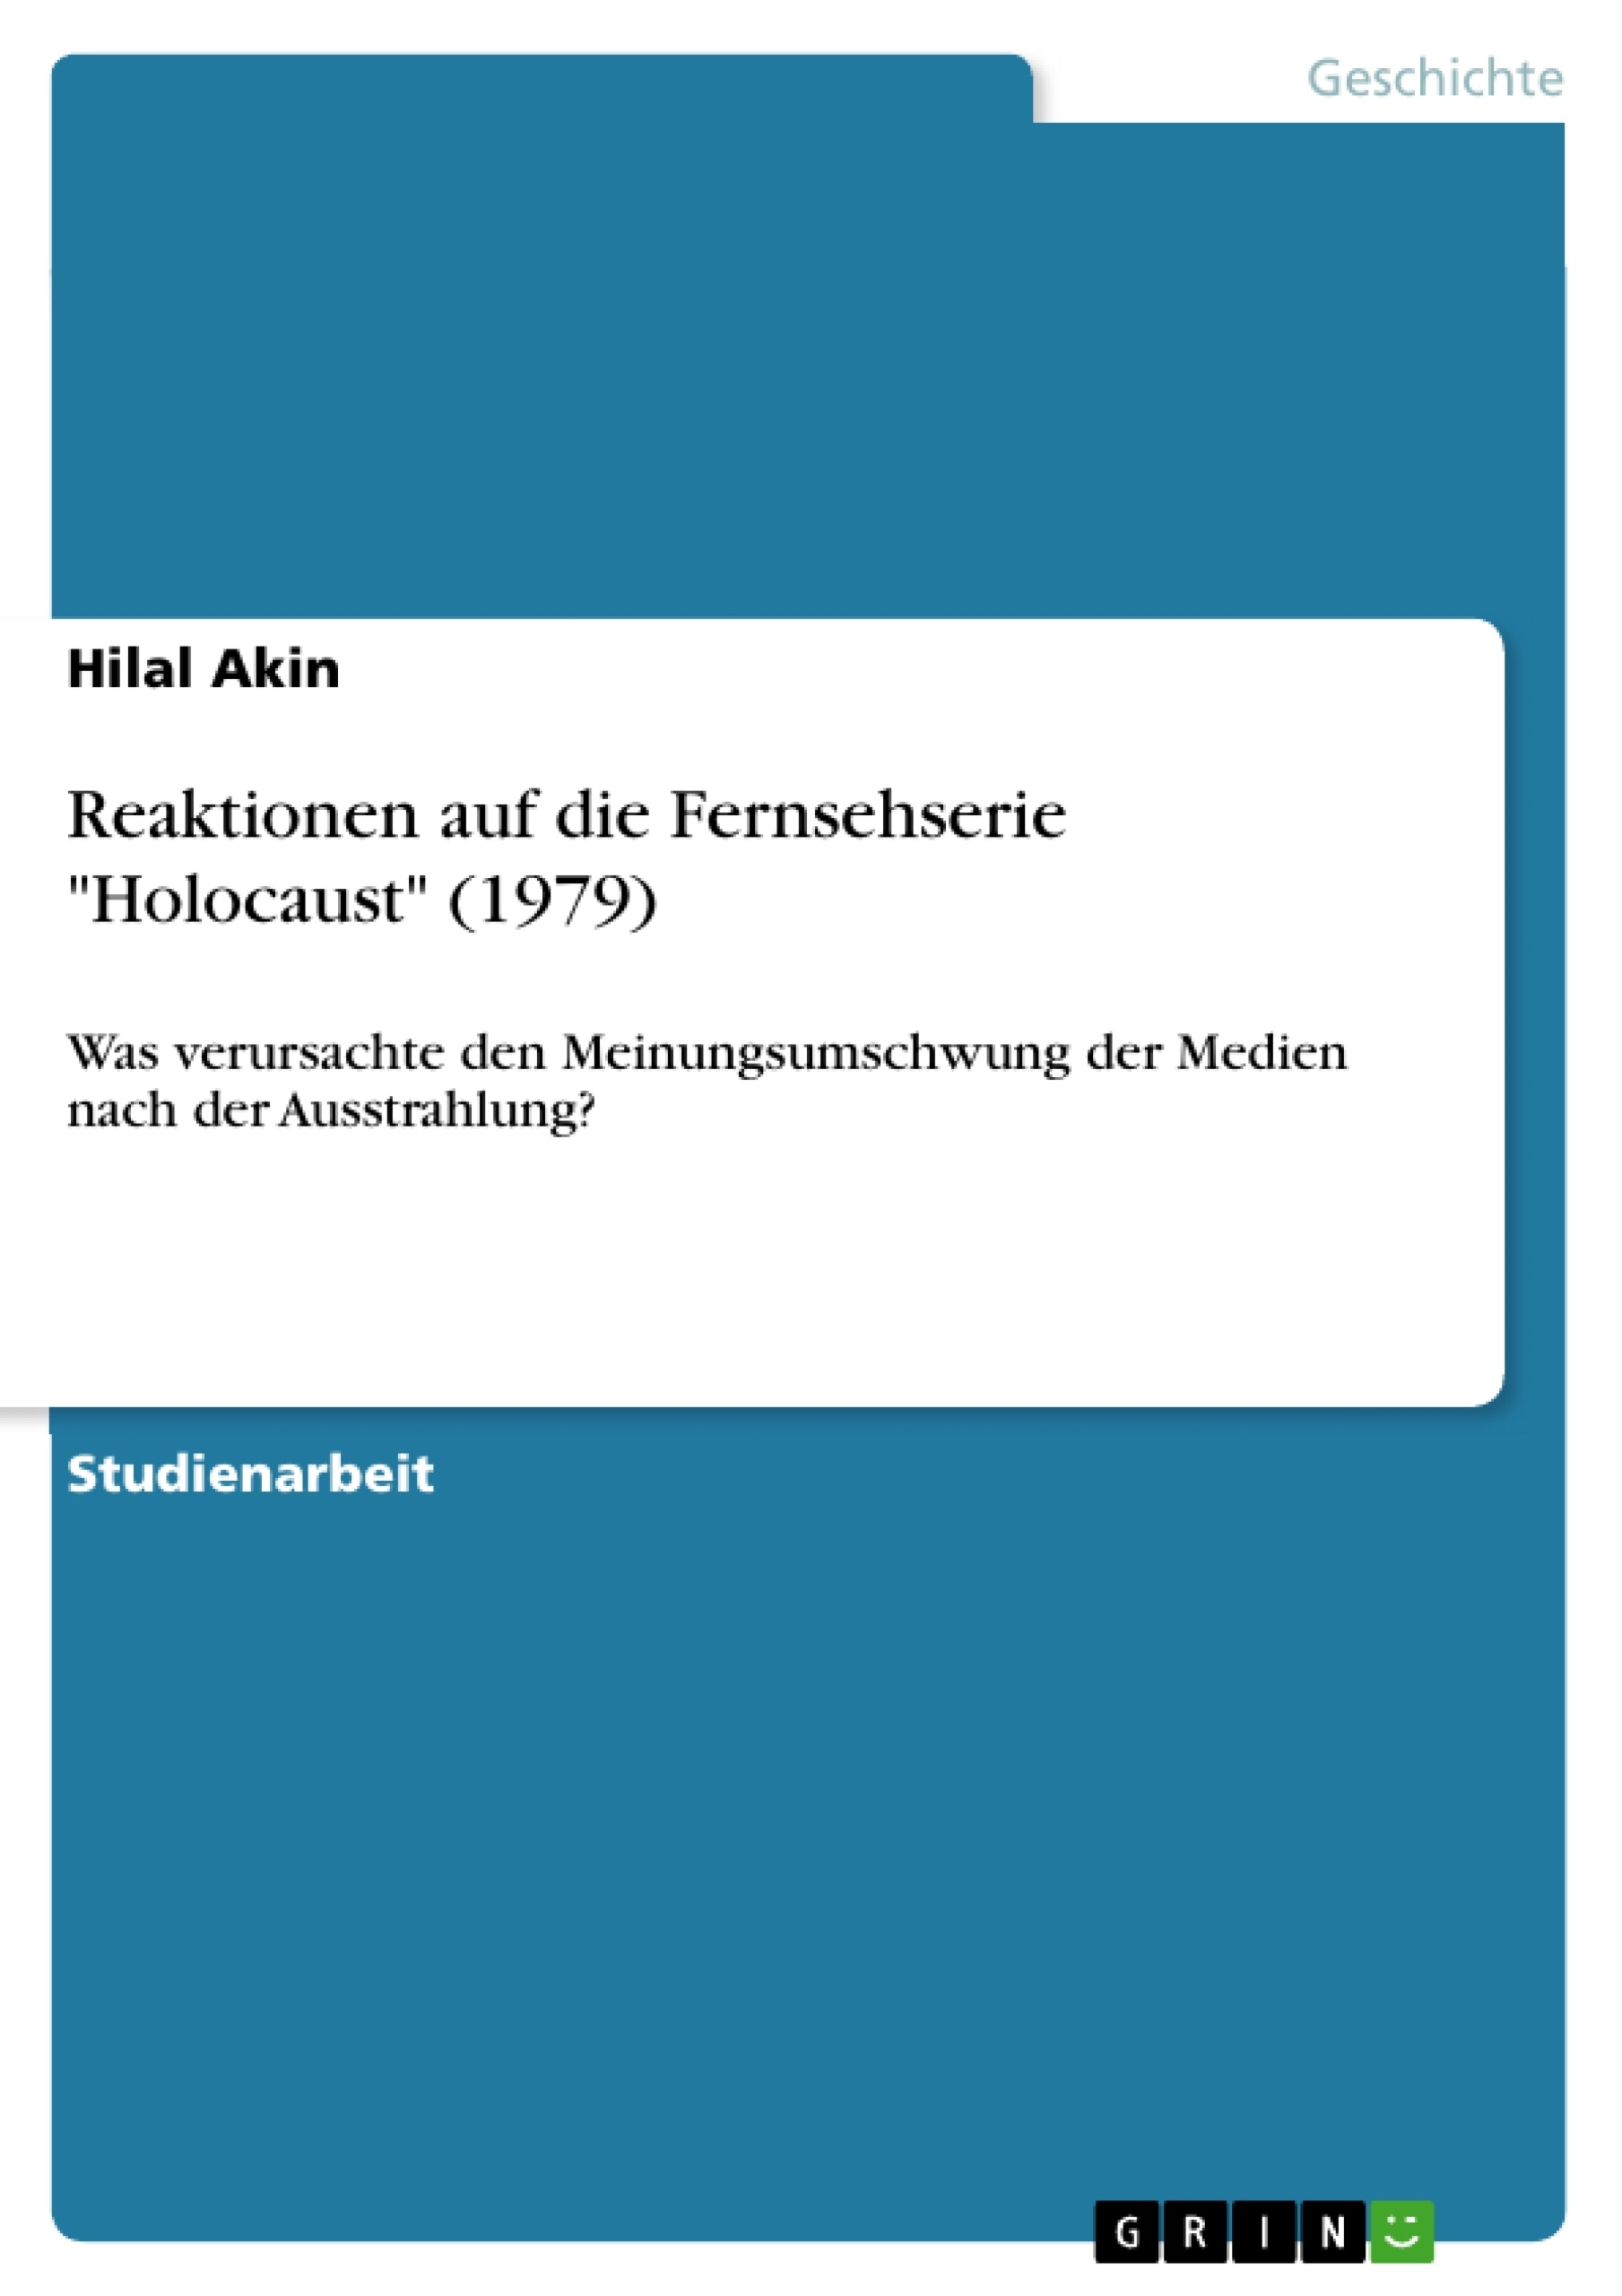 Titre: Reaktionen auf die Fernsehserie "Holocaust" (1979)